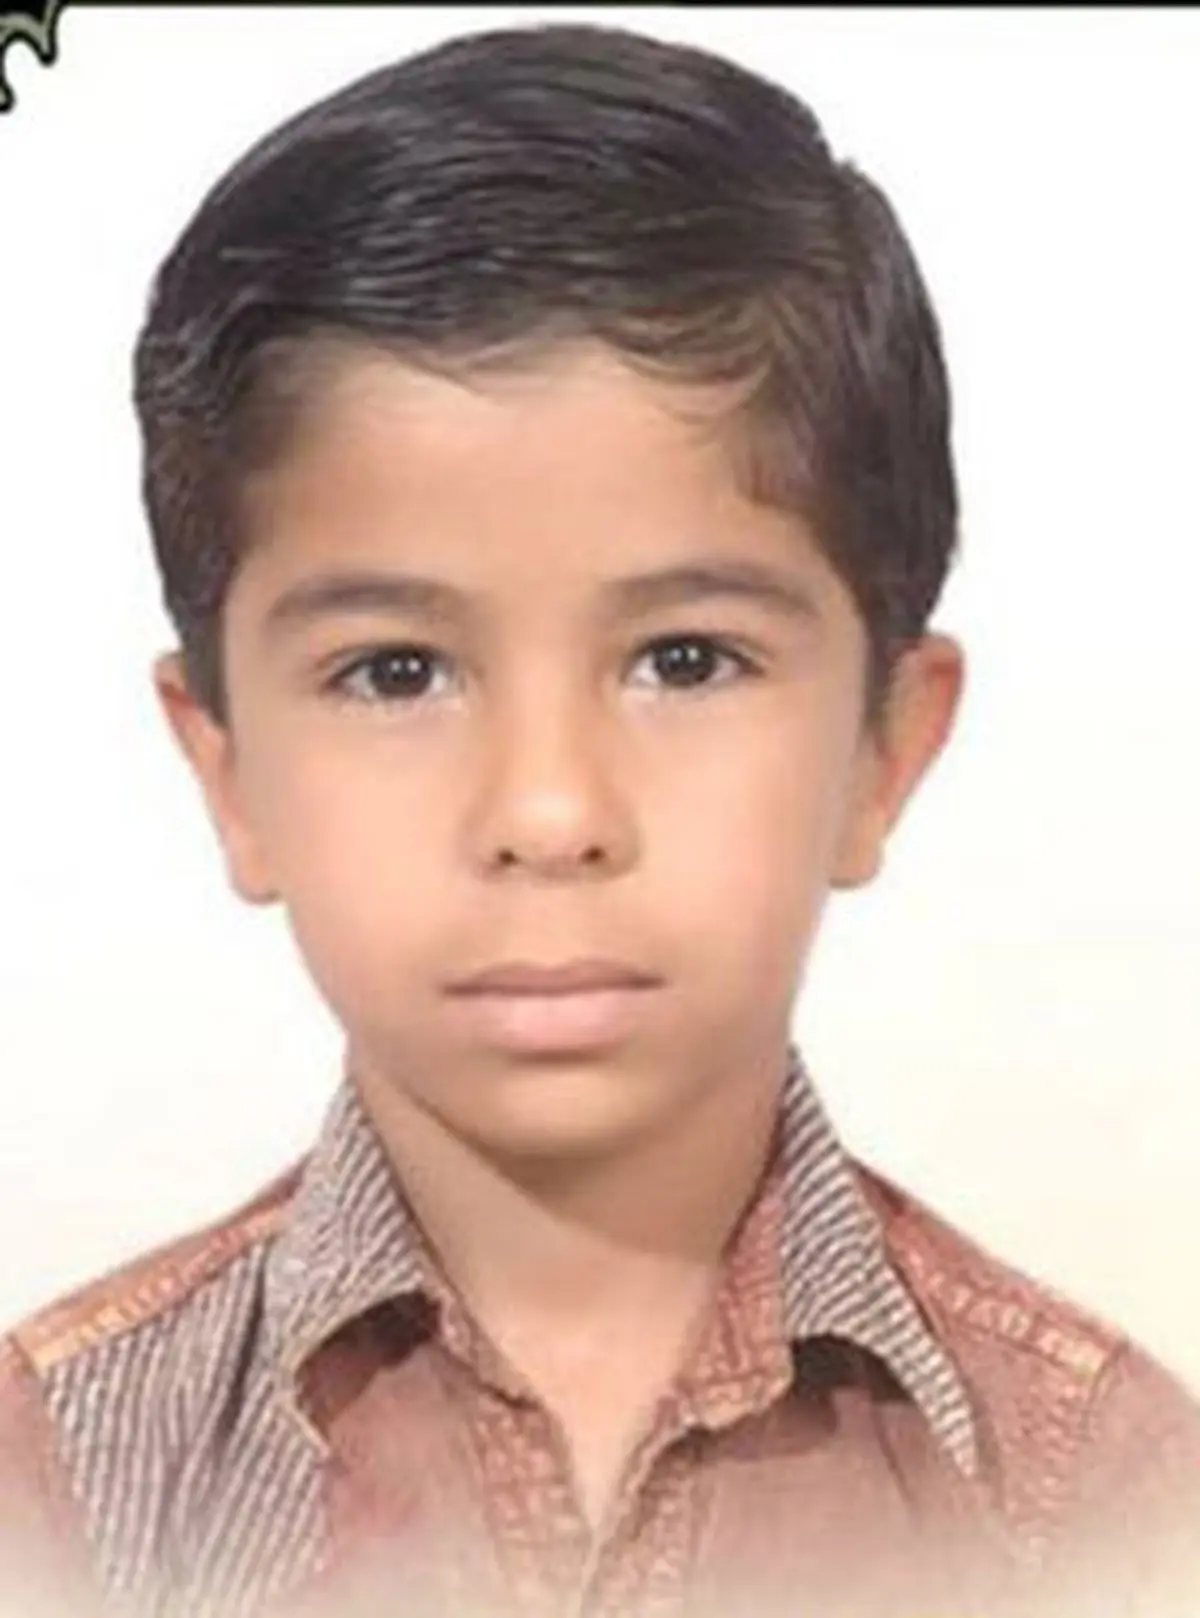 خودکشی پسر بوشهری به دلیل نداشتن موبایل تکذیب شد+ سند